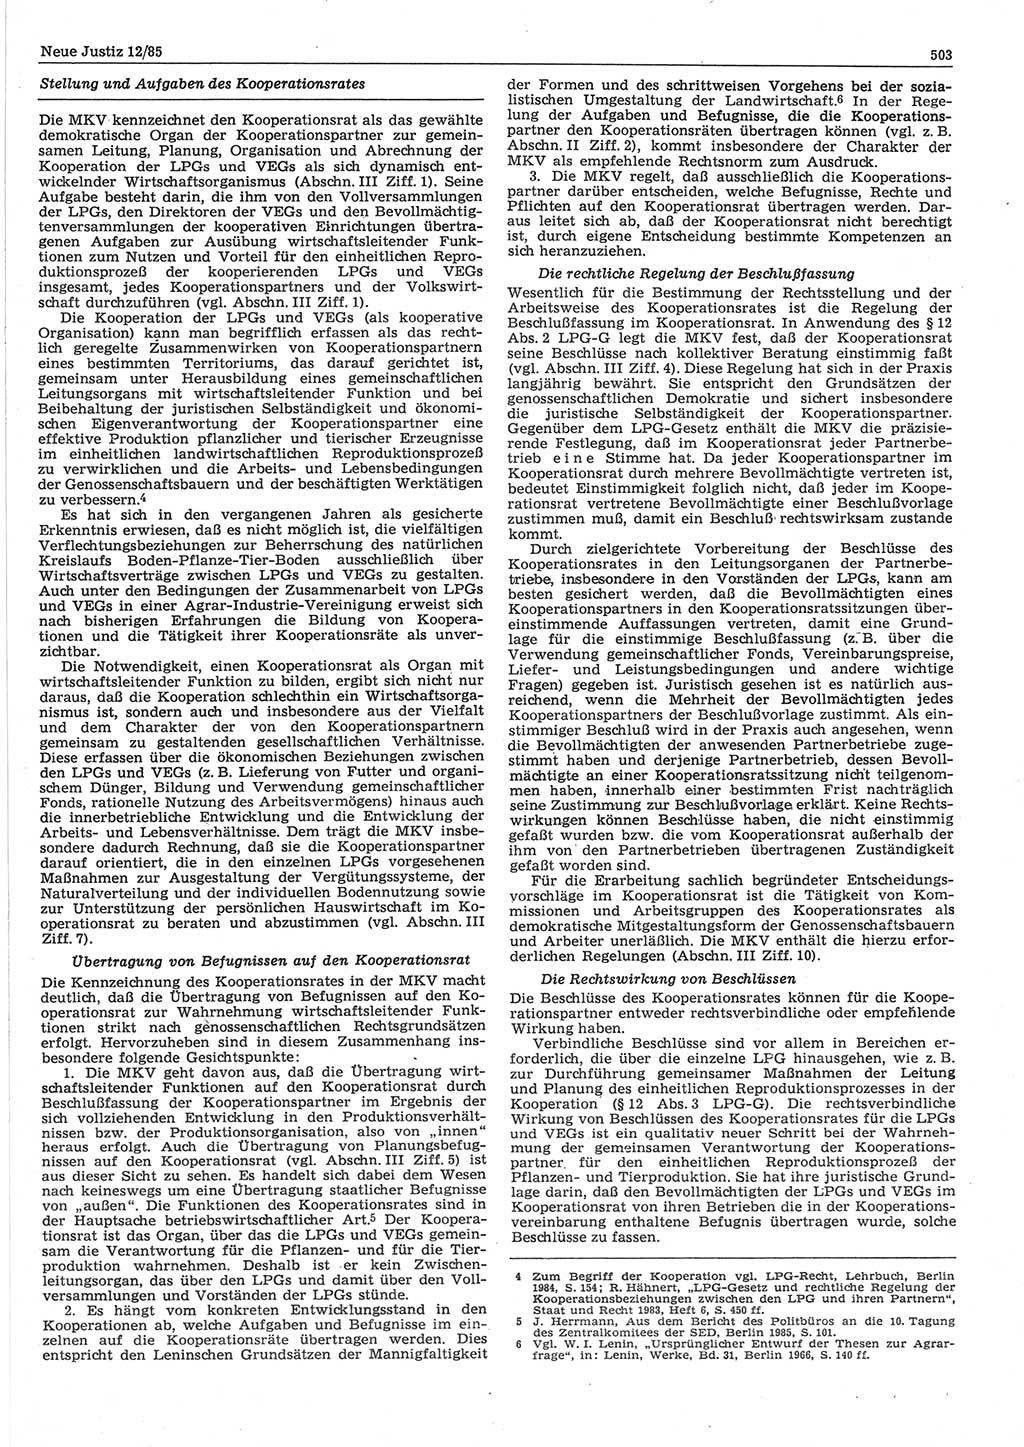 Neue Justiz (NJ), Zeitschrift für sozialistisches Recht und Gesetzlichkeit [Deutsche Demokratische Republik (DDR)], 39. Jahrgang 1985, Seite 503 (NJ DDR 1985, S. 503)